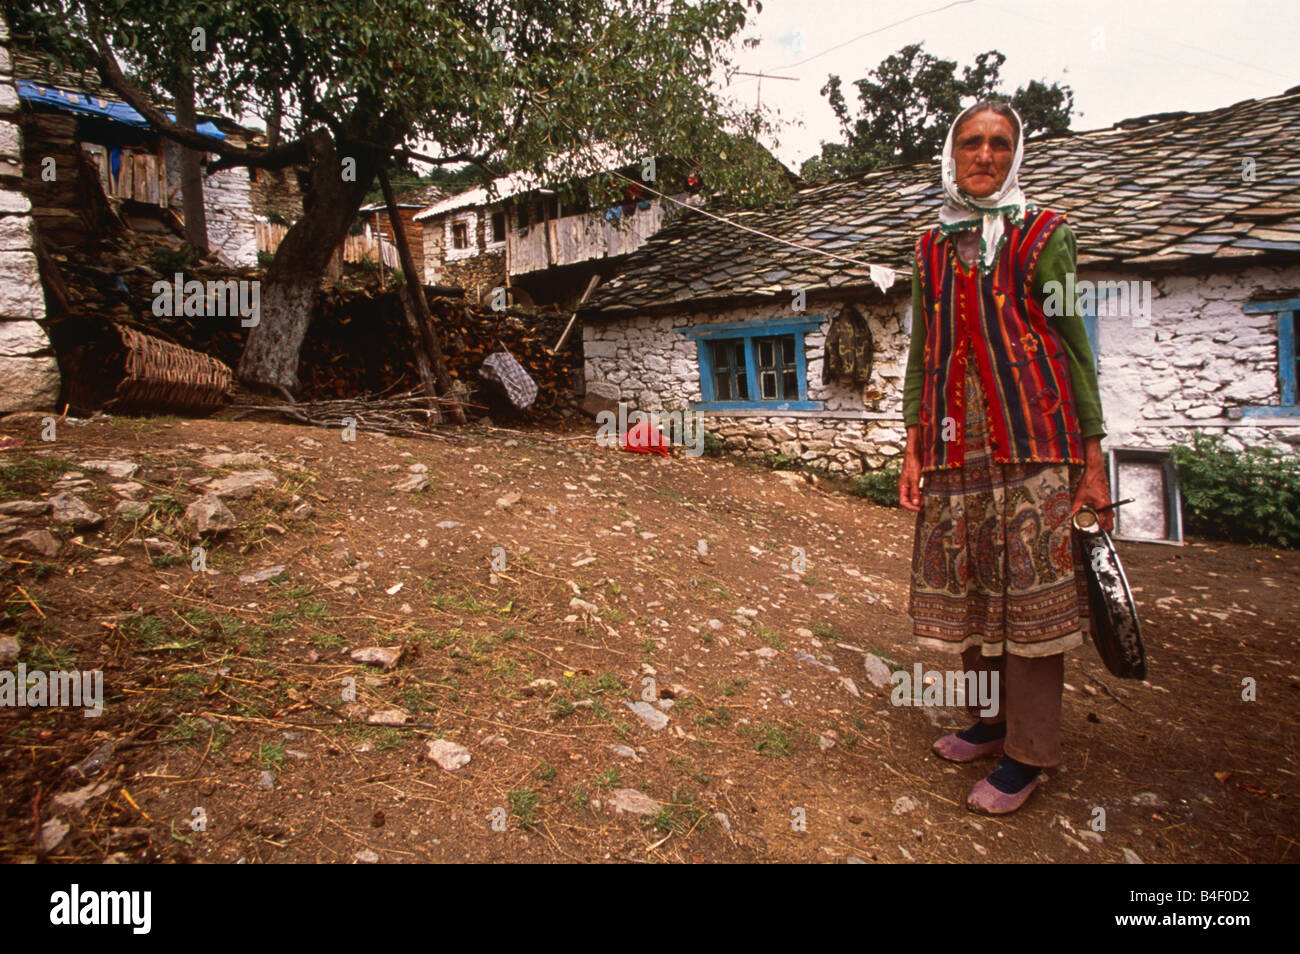 Ältere Frau, die traditionelle Kleidung außerhalb whitewash Ferienhaus in Dorf, Porträt, Kukes, Albanien, Südosteuropa Stockfoto